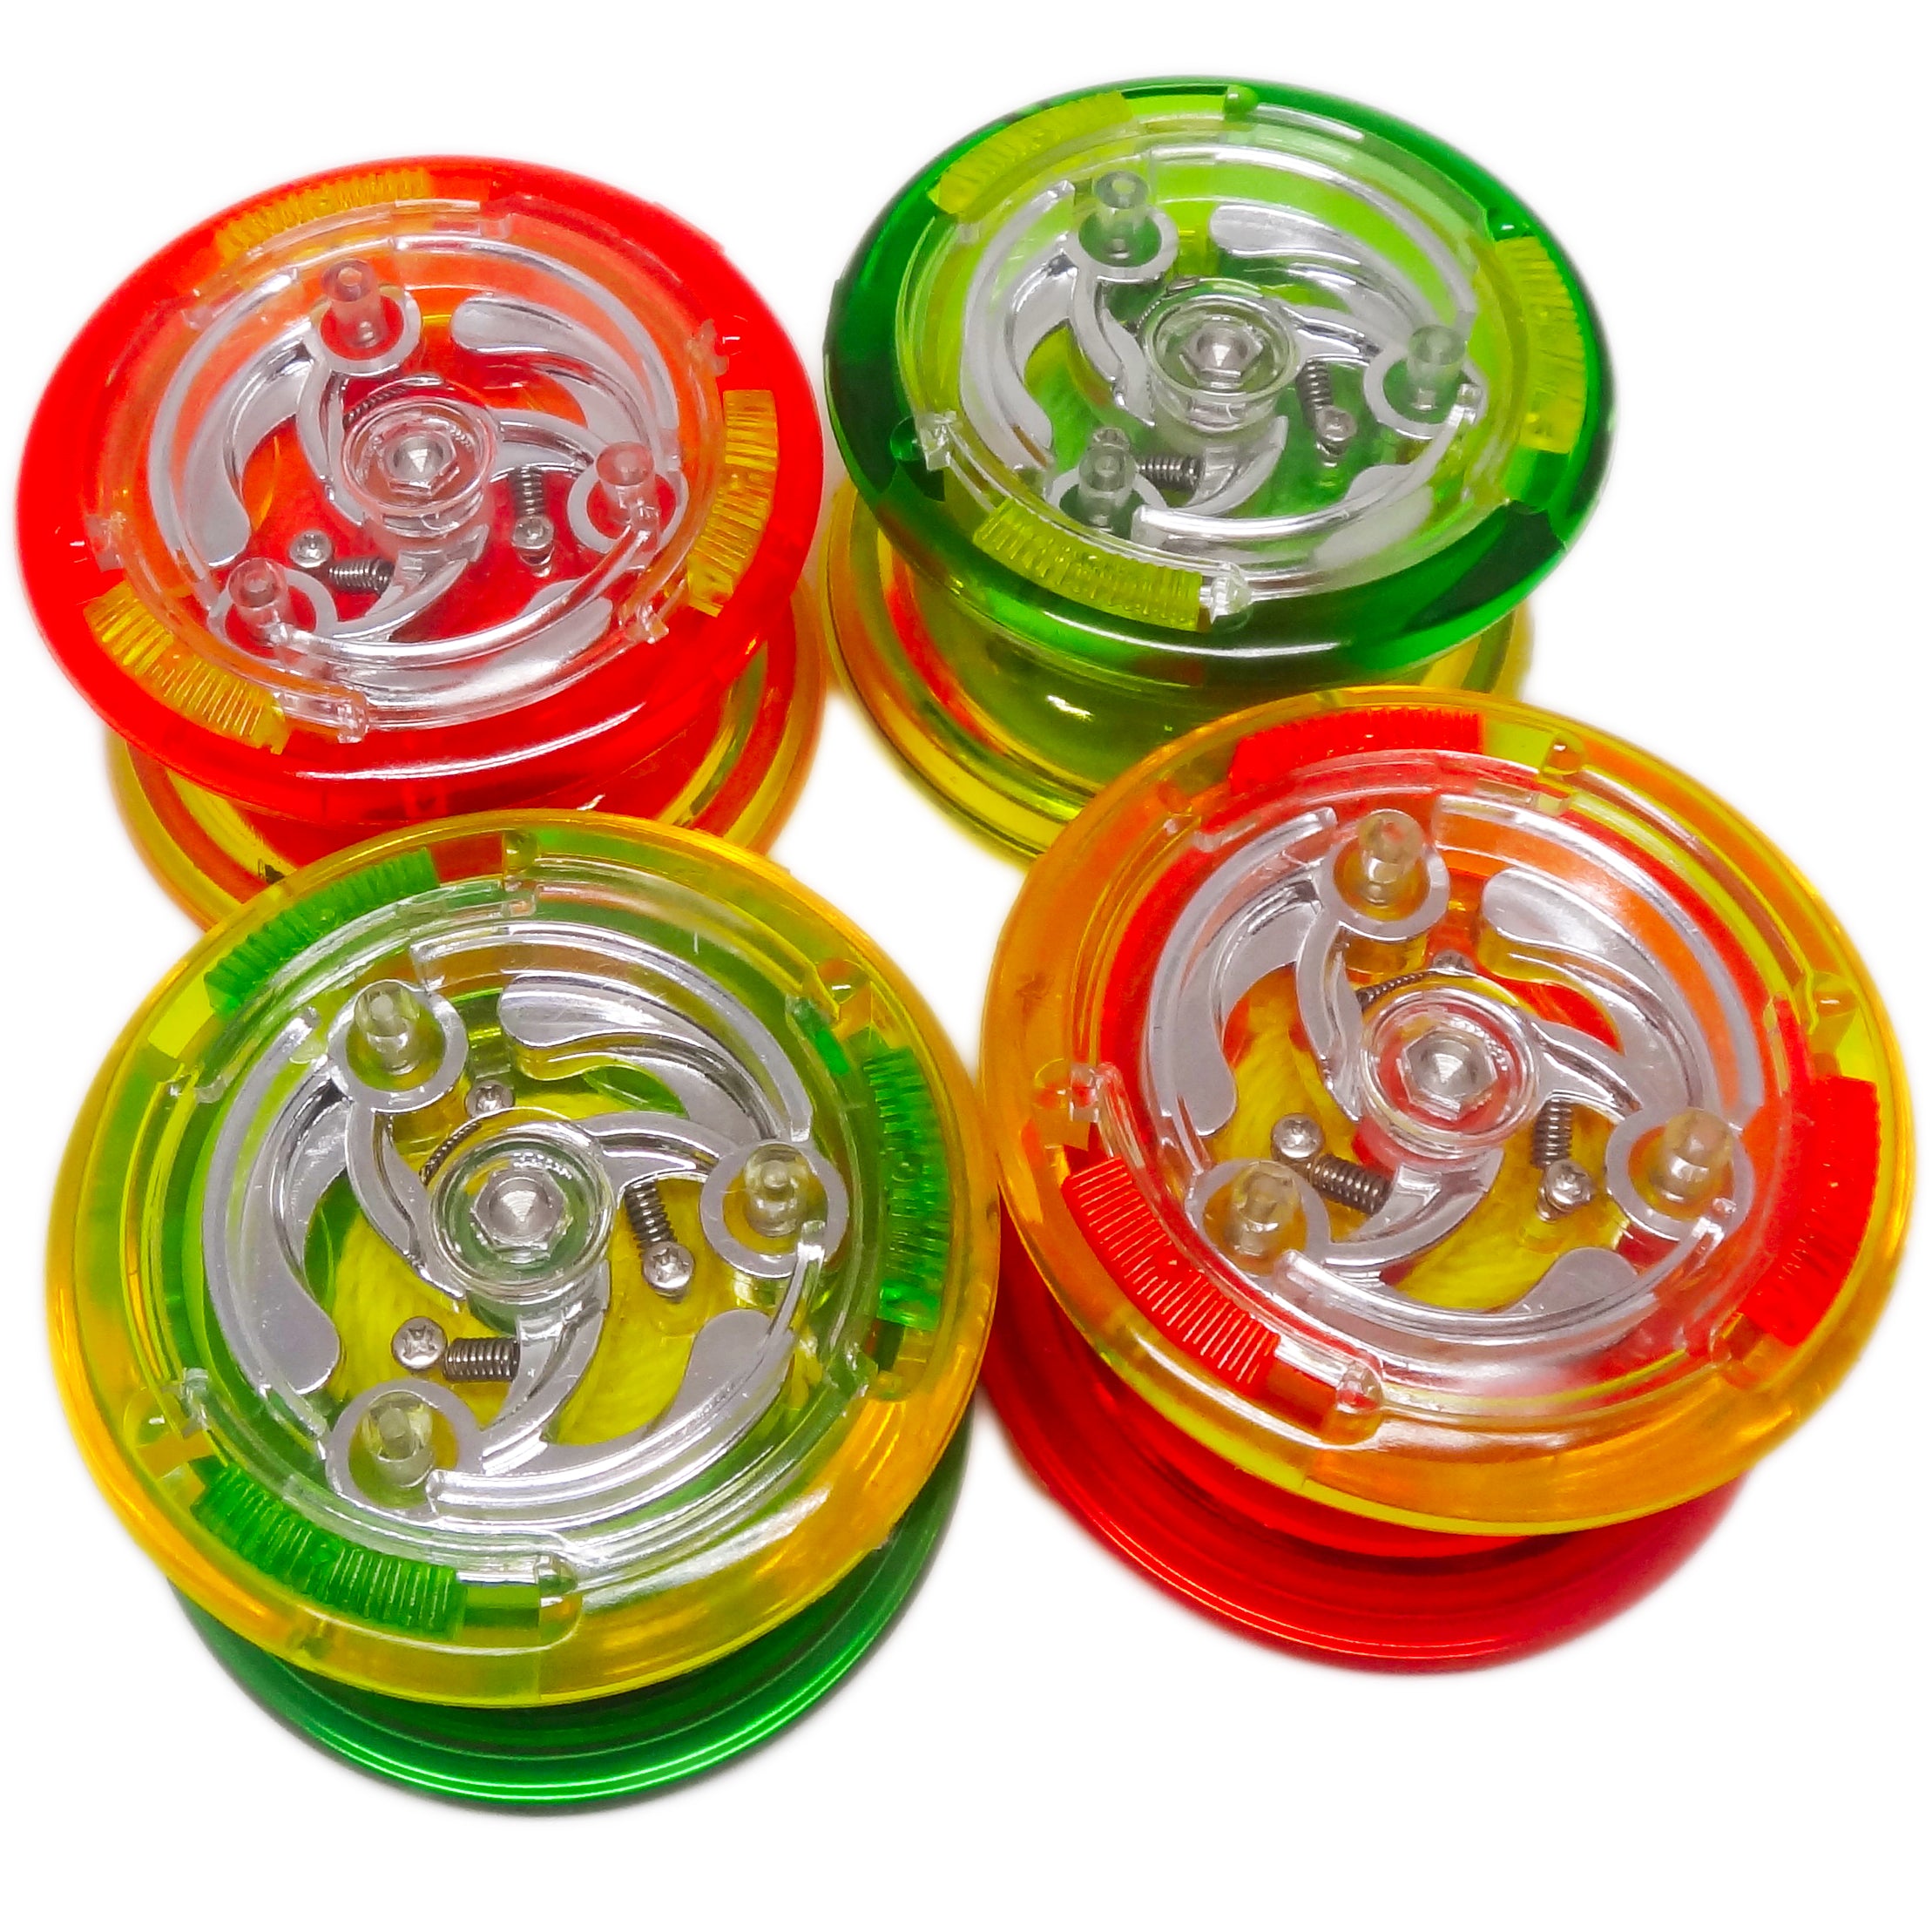 [YO]2 superbrain yo-yo COLORIS